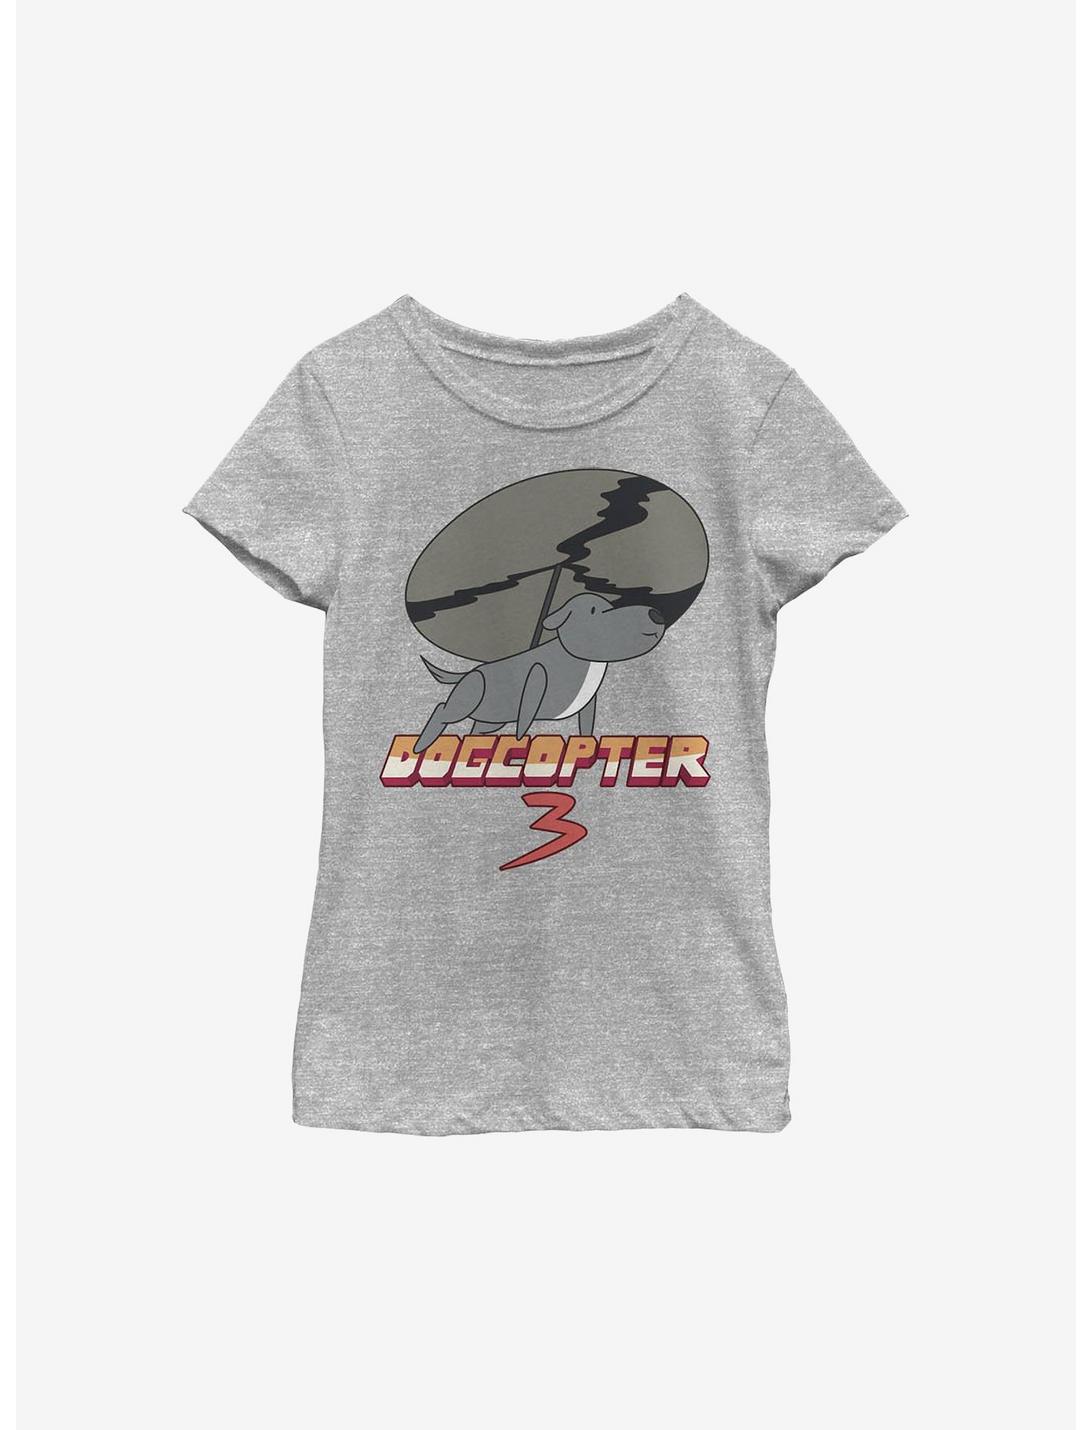 Steven Universe Dogcopter Youth Girls T-Shirt, ATH HTR, hi-res